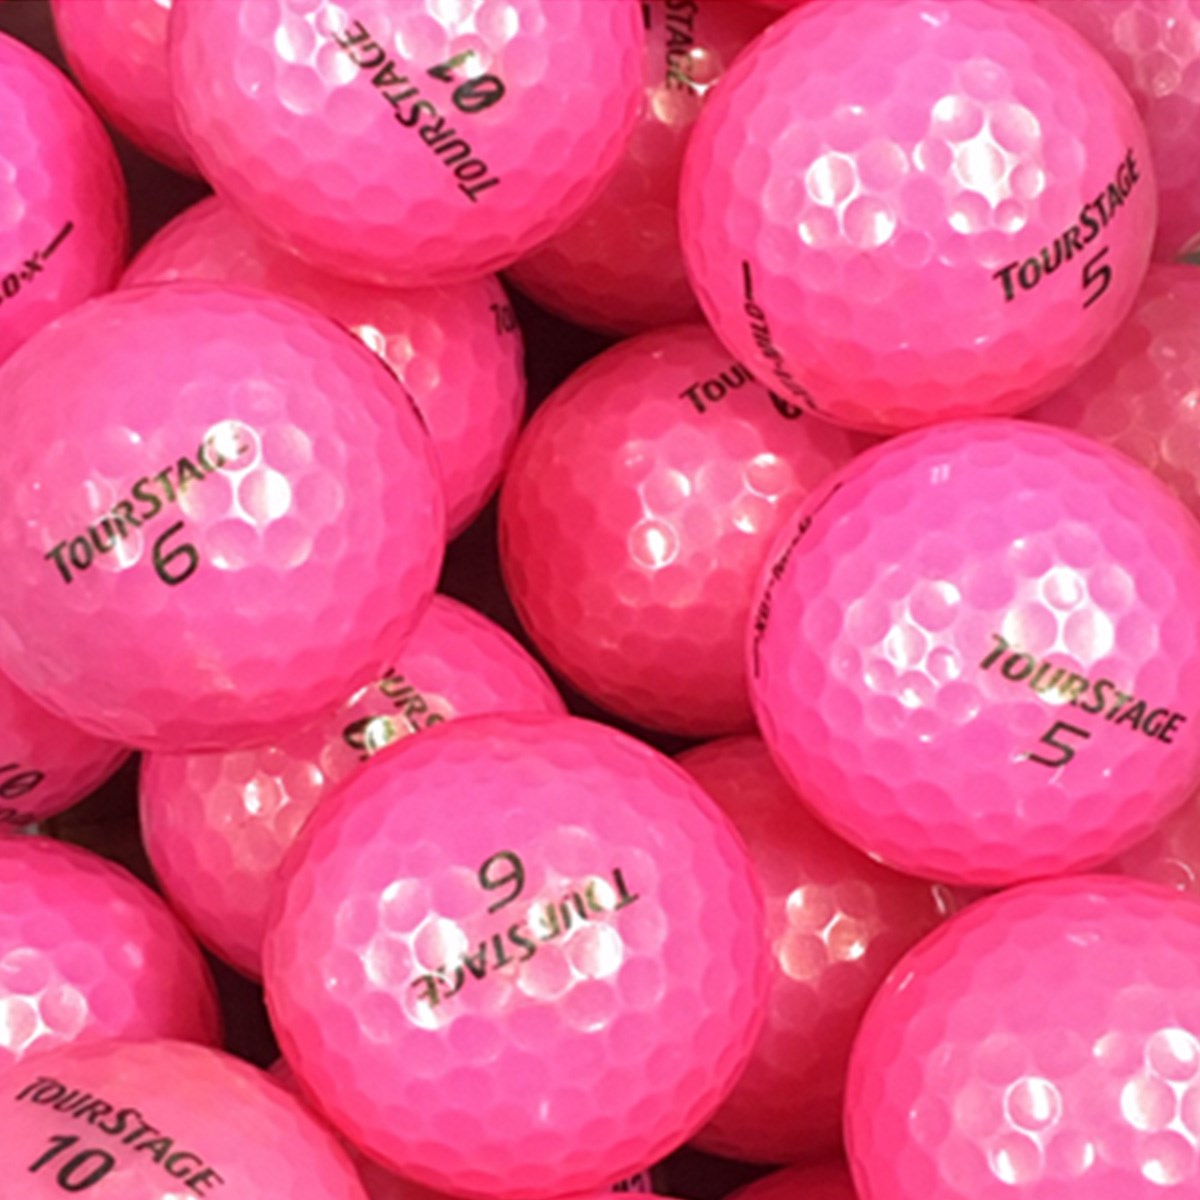 ロストボール ツアーステージ混合 Sランク ピンク系 20個セット ゴルフの大画像